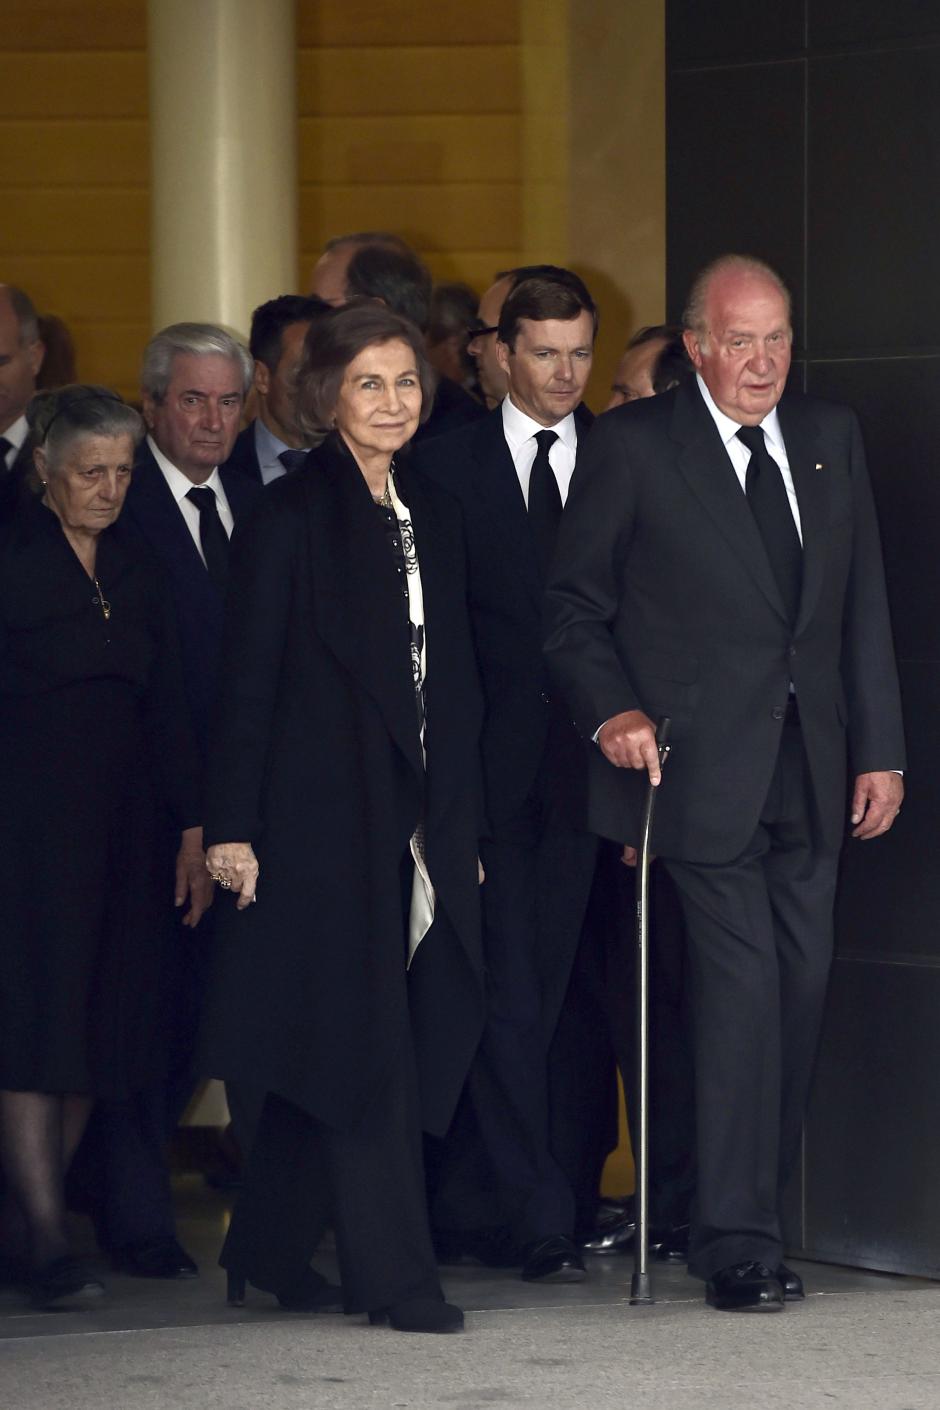 Los Reyes de España Juan Carlos I y Sofía de Grecia junto a Pedro y Teresa de Borbon Dos Sicilias durante el entierro de Alicia de Borbón Parma en Madrid.
28/03/2017